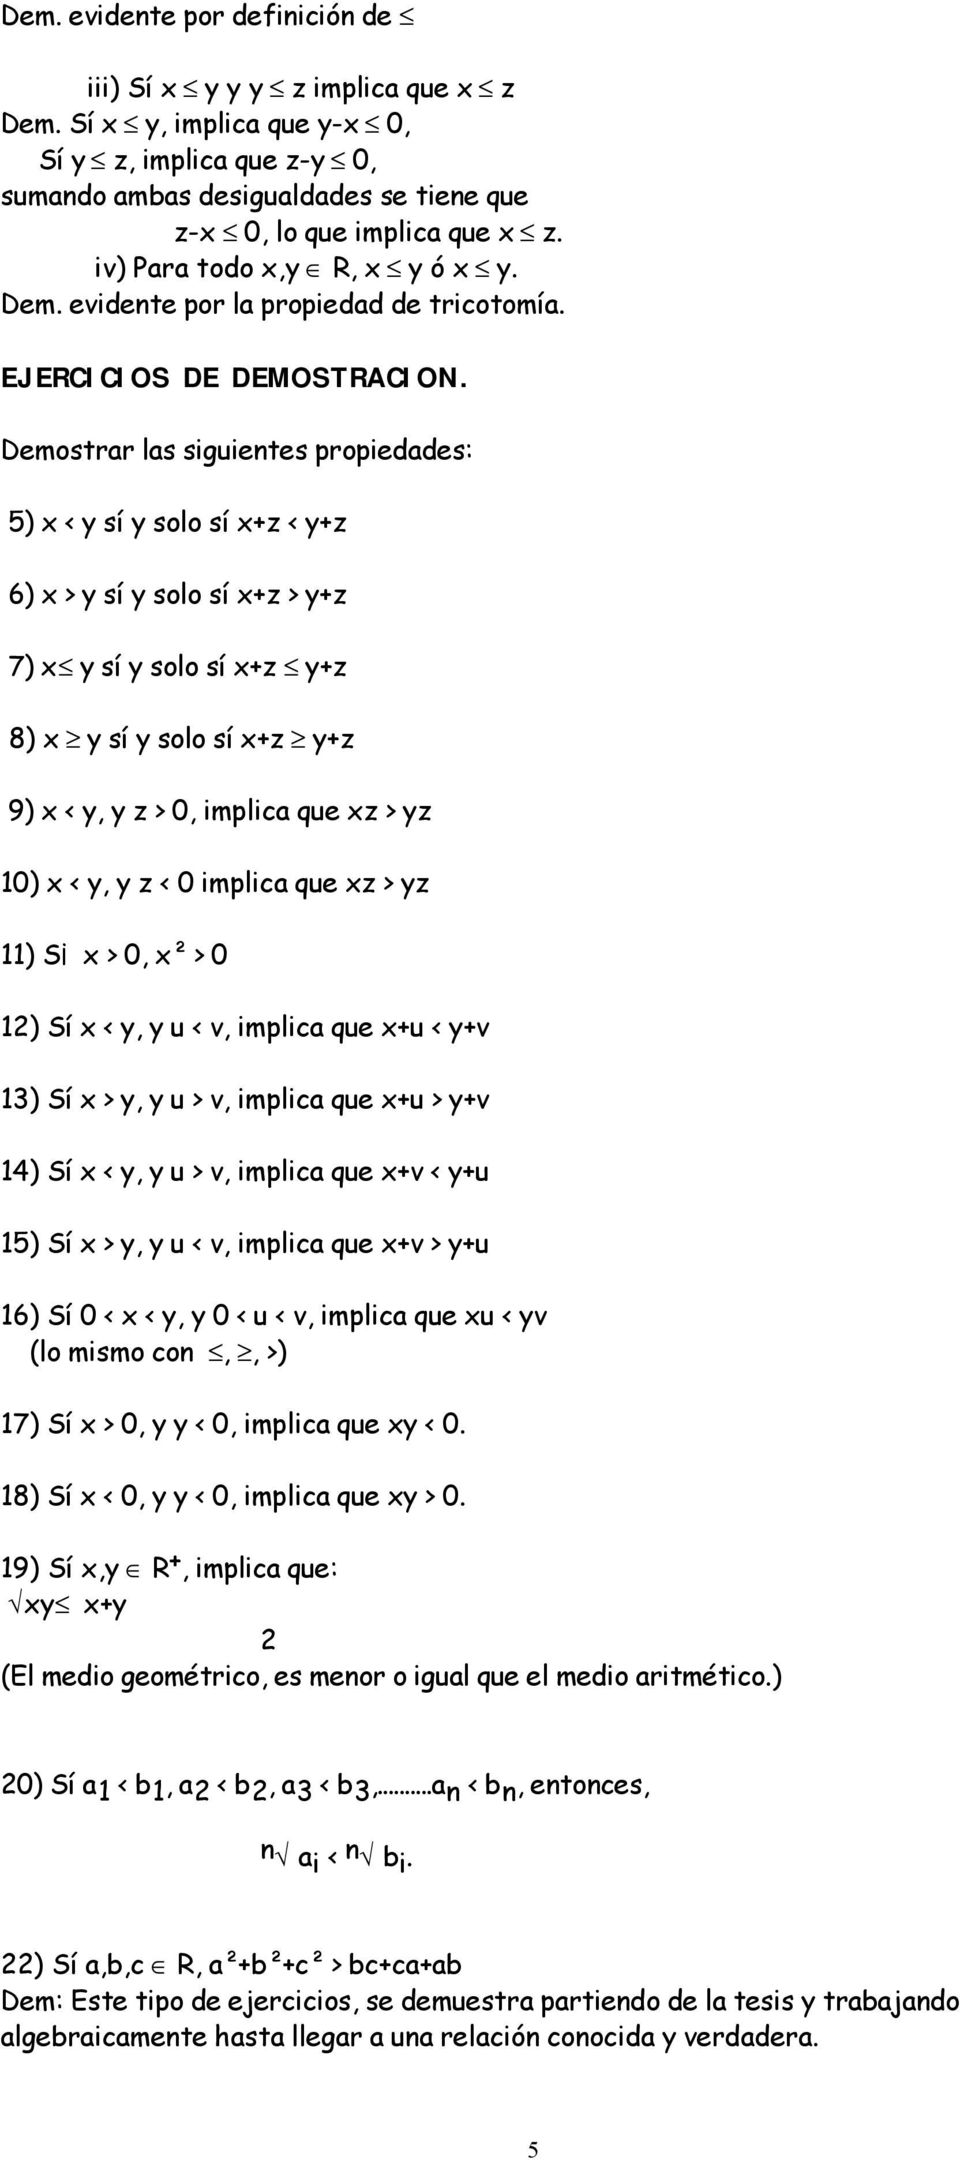 Demostrar las siguientes propiedades: 5) x < y sí y solo sí x+z < y+z 6) x > y sí y solo sí x+z > y+z 7) x y sí y solo sí x+z y+z 8) x y sí y solo sí x+z y+z 9) x < y, y z > 0, implica que xz > yz